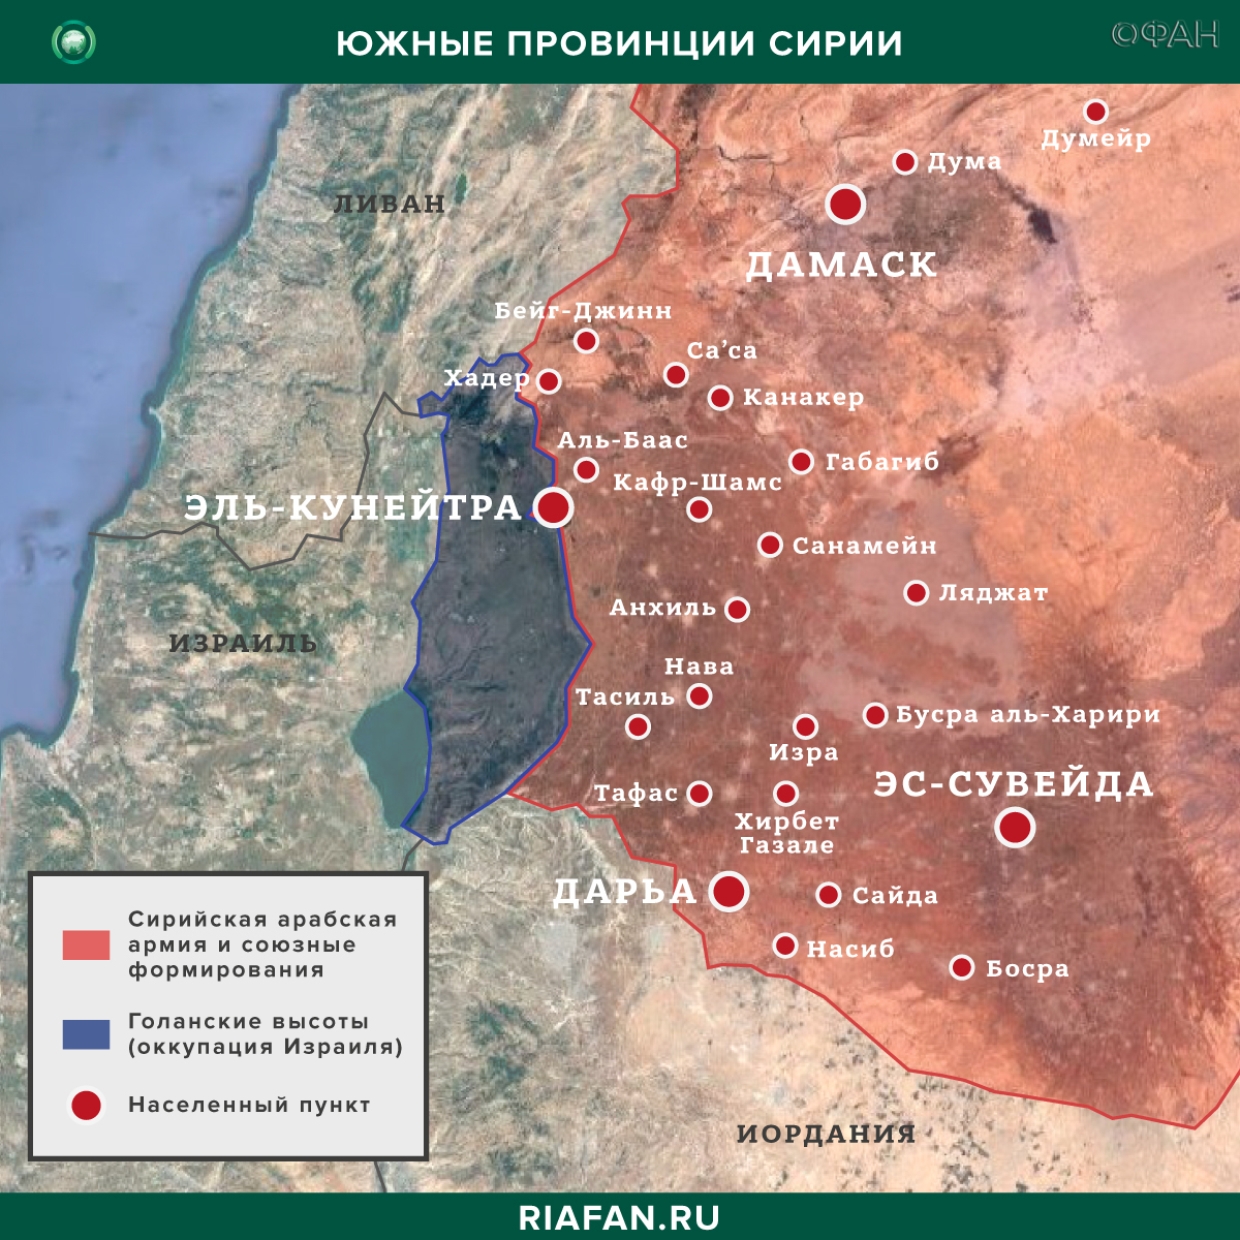 Nouvelles de Syrie 29 Février 07.00: вооруженный конфликт между жителями и SDF в Дейр-эз-Зоре, боевики ударили по Джурину в Хаме